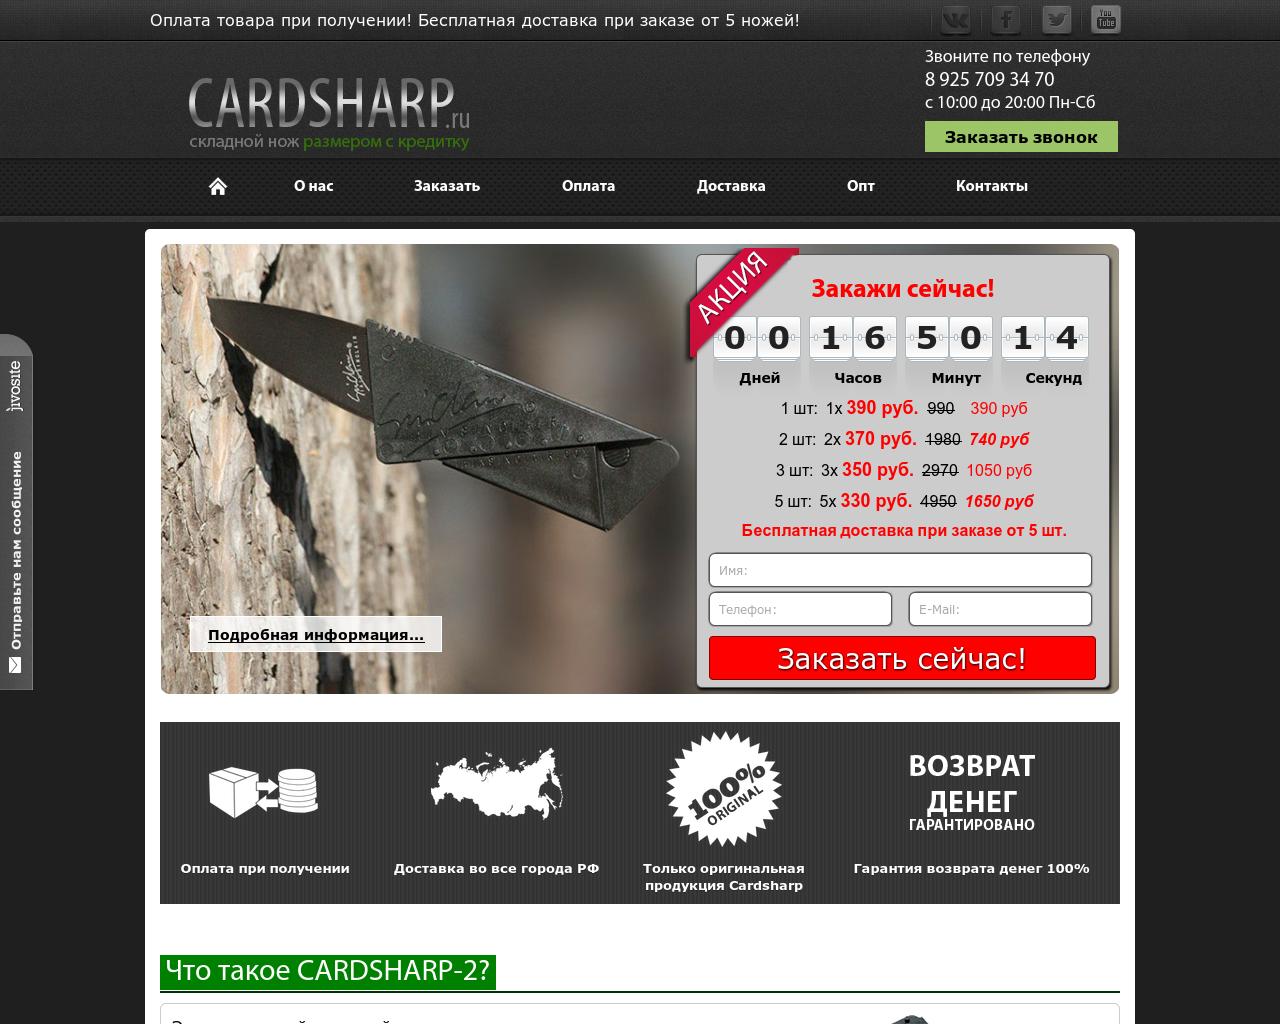 Изображение сайта cardsharp.ru в разрешении 1280x1024